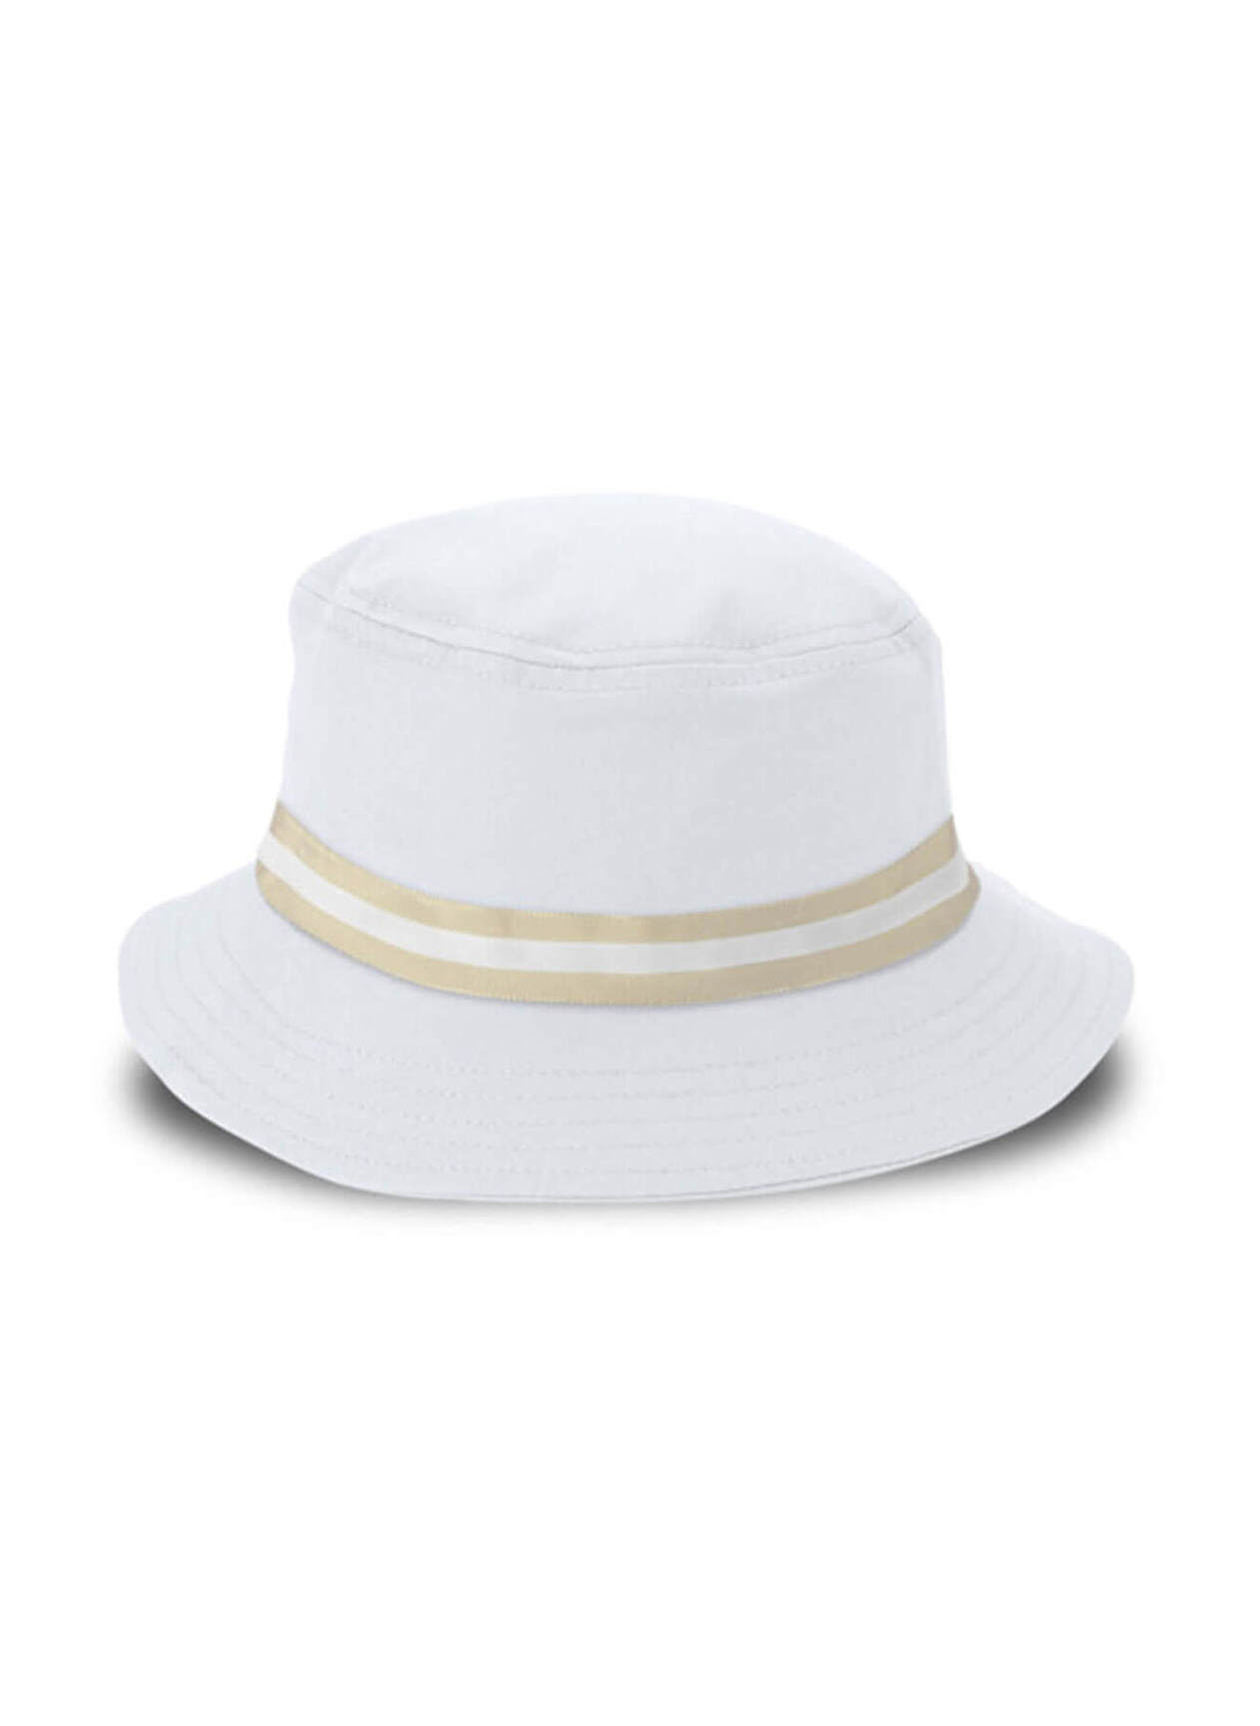 Imperial White / Khaki The Oxford Bucket Hat